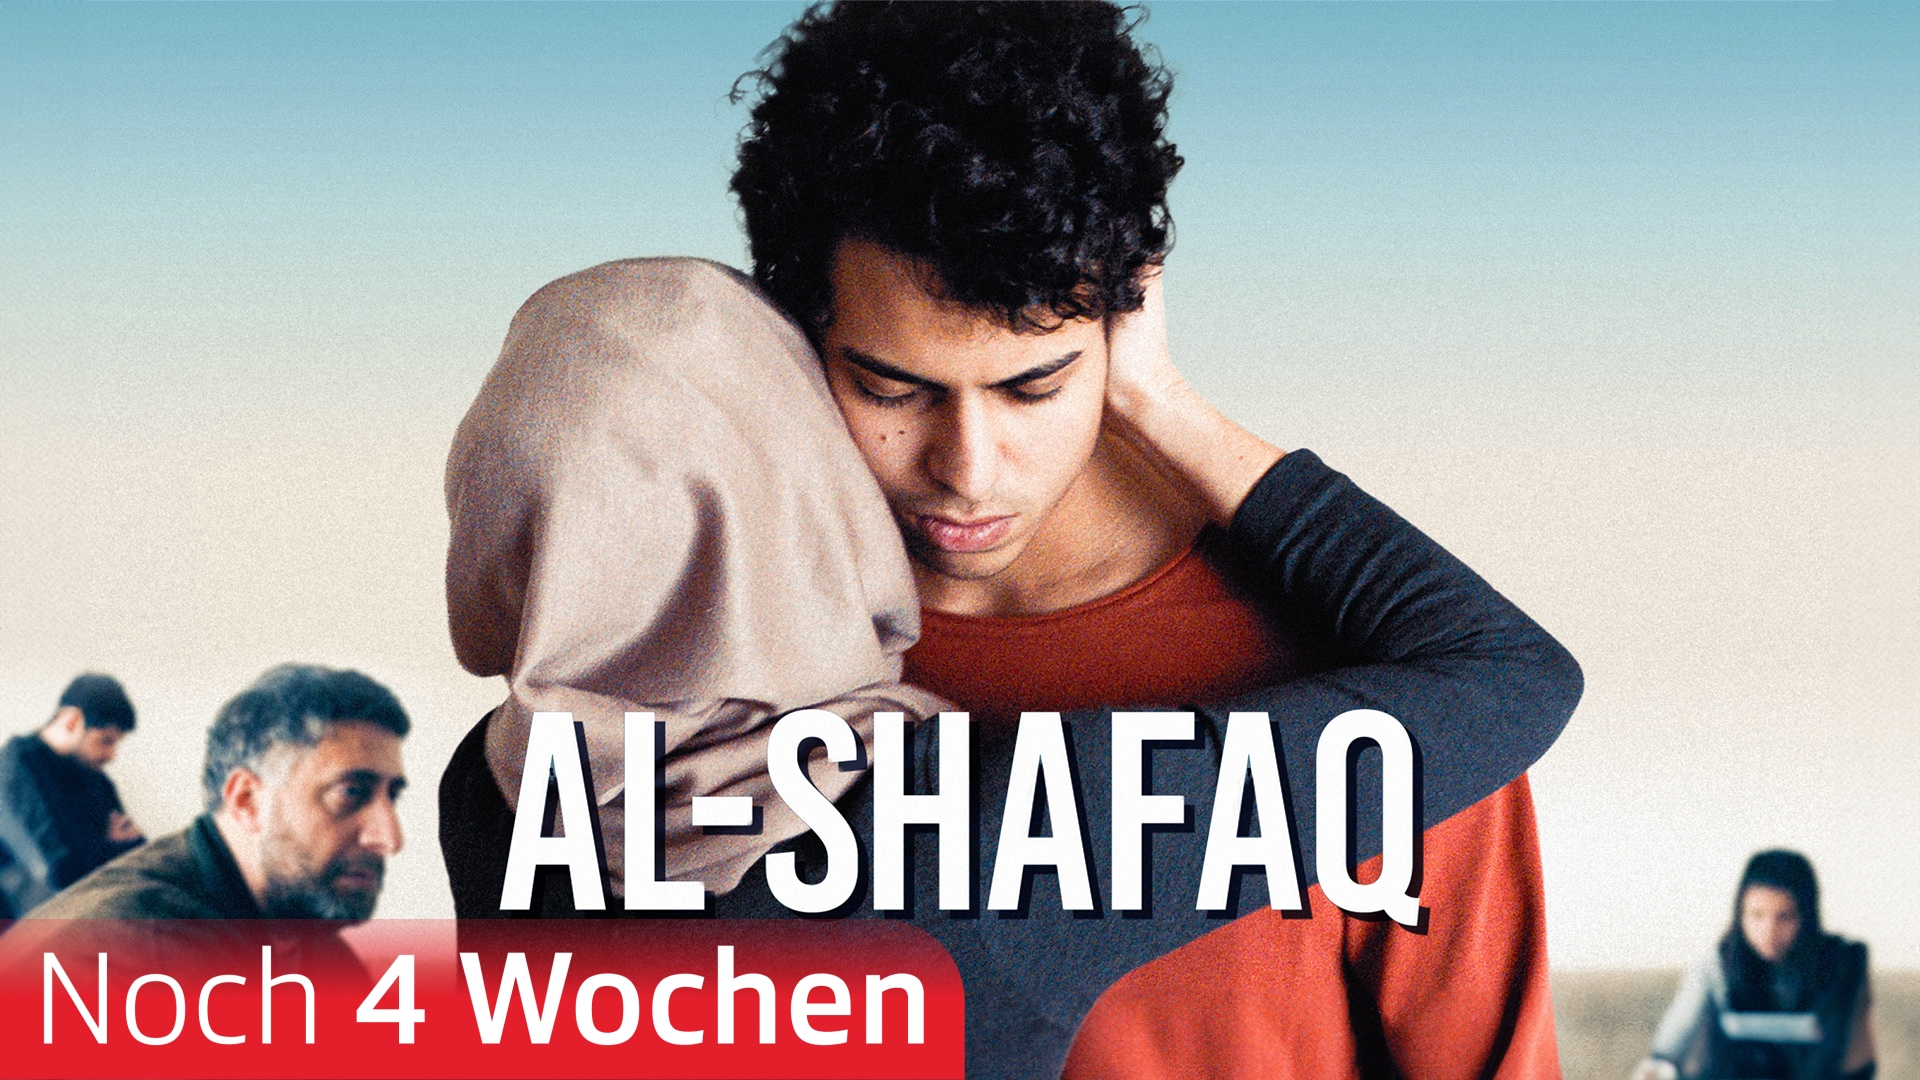 Al-Shafaq – Wenn der Himmel sich spaltet